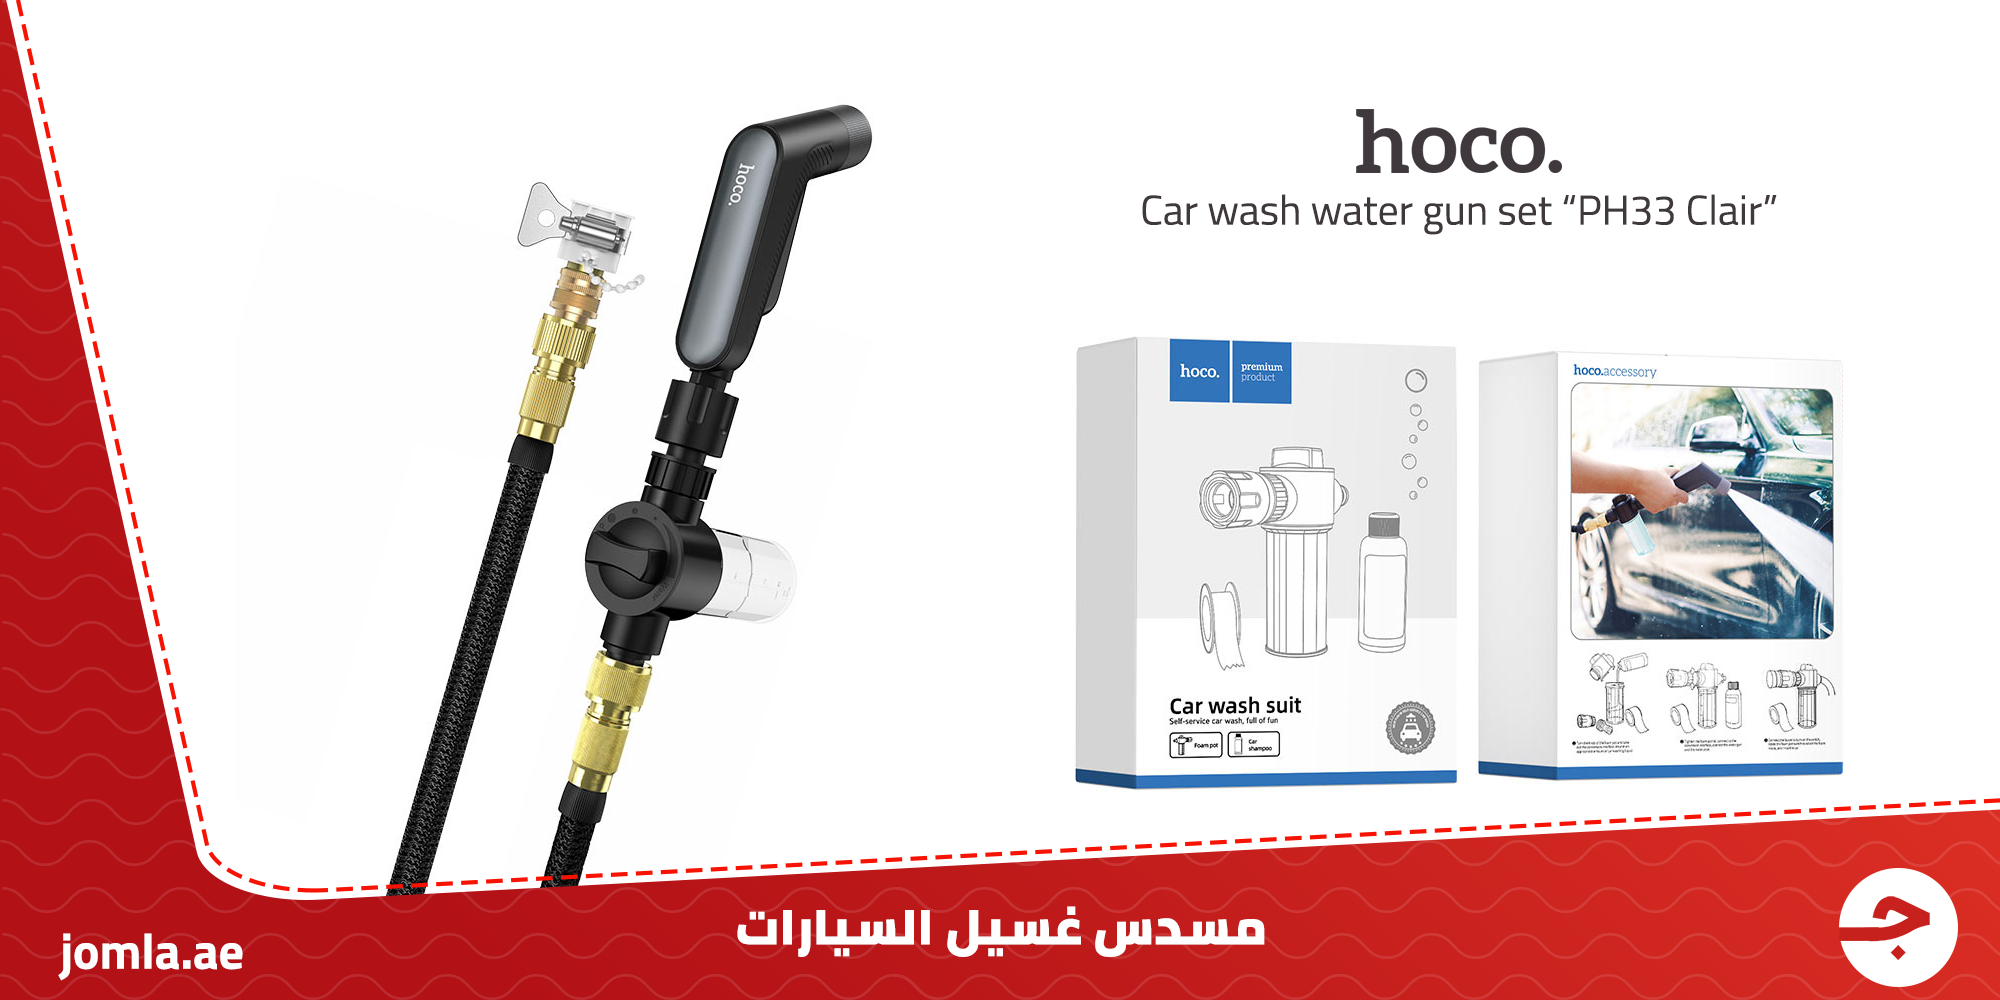 مضخة ماء غسيل السيارة Hoco - Car wash water gun set “PH33 Clair